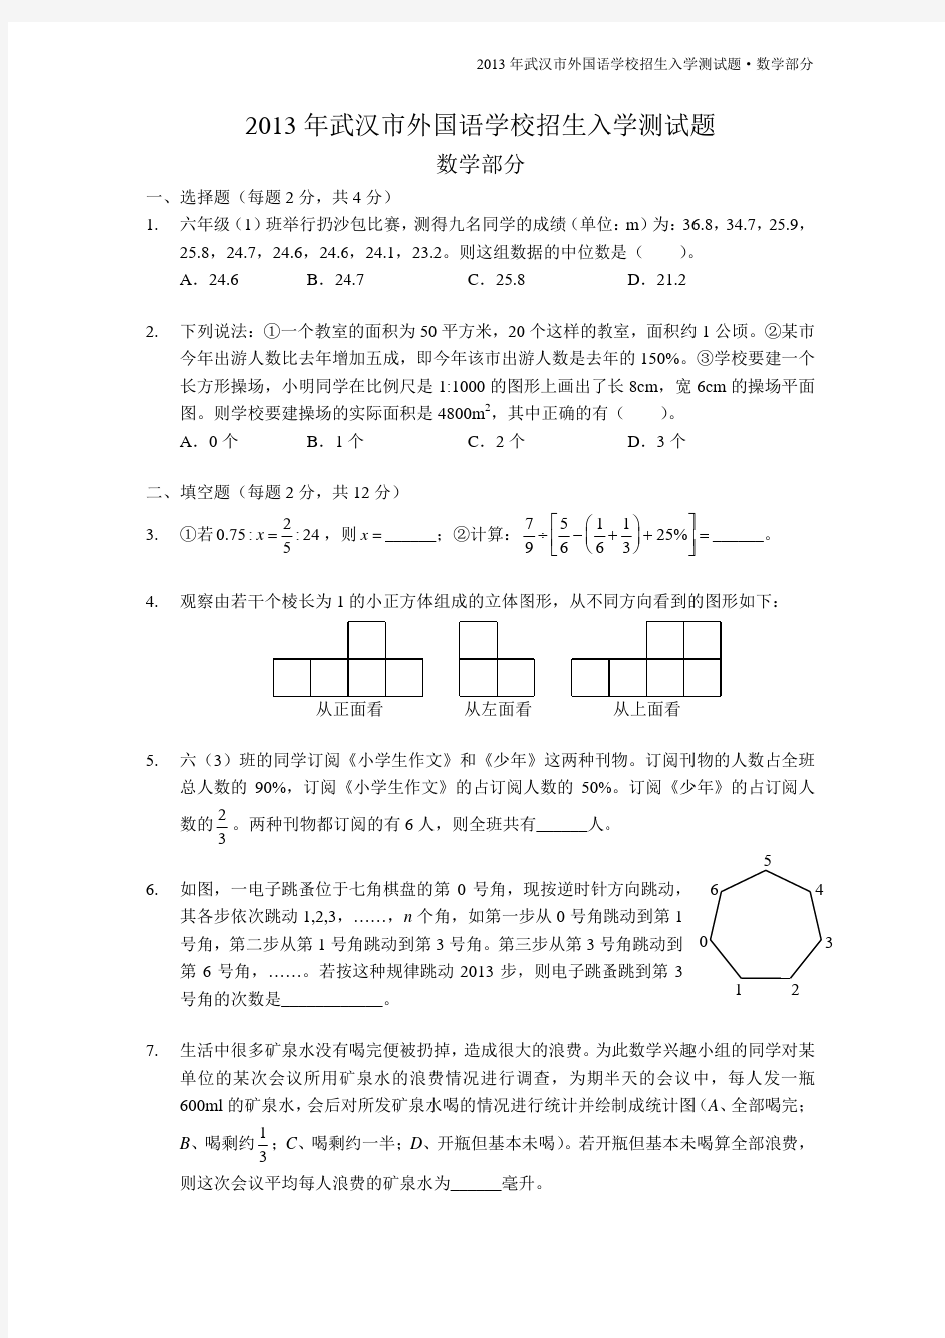 武汉实验外国语学校初中部小升初试卷真题与答案详解版